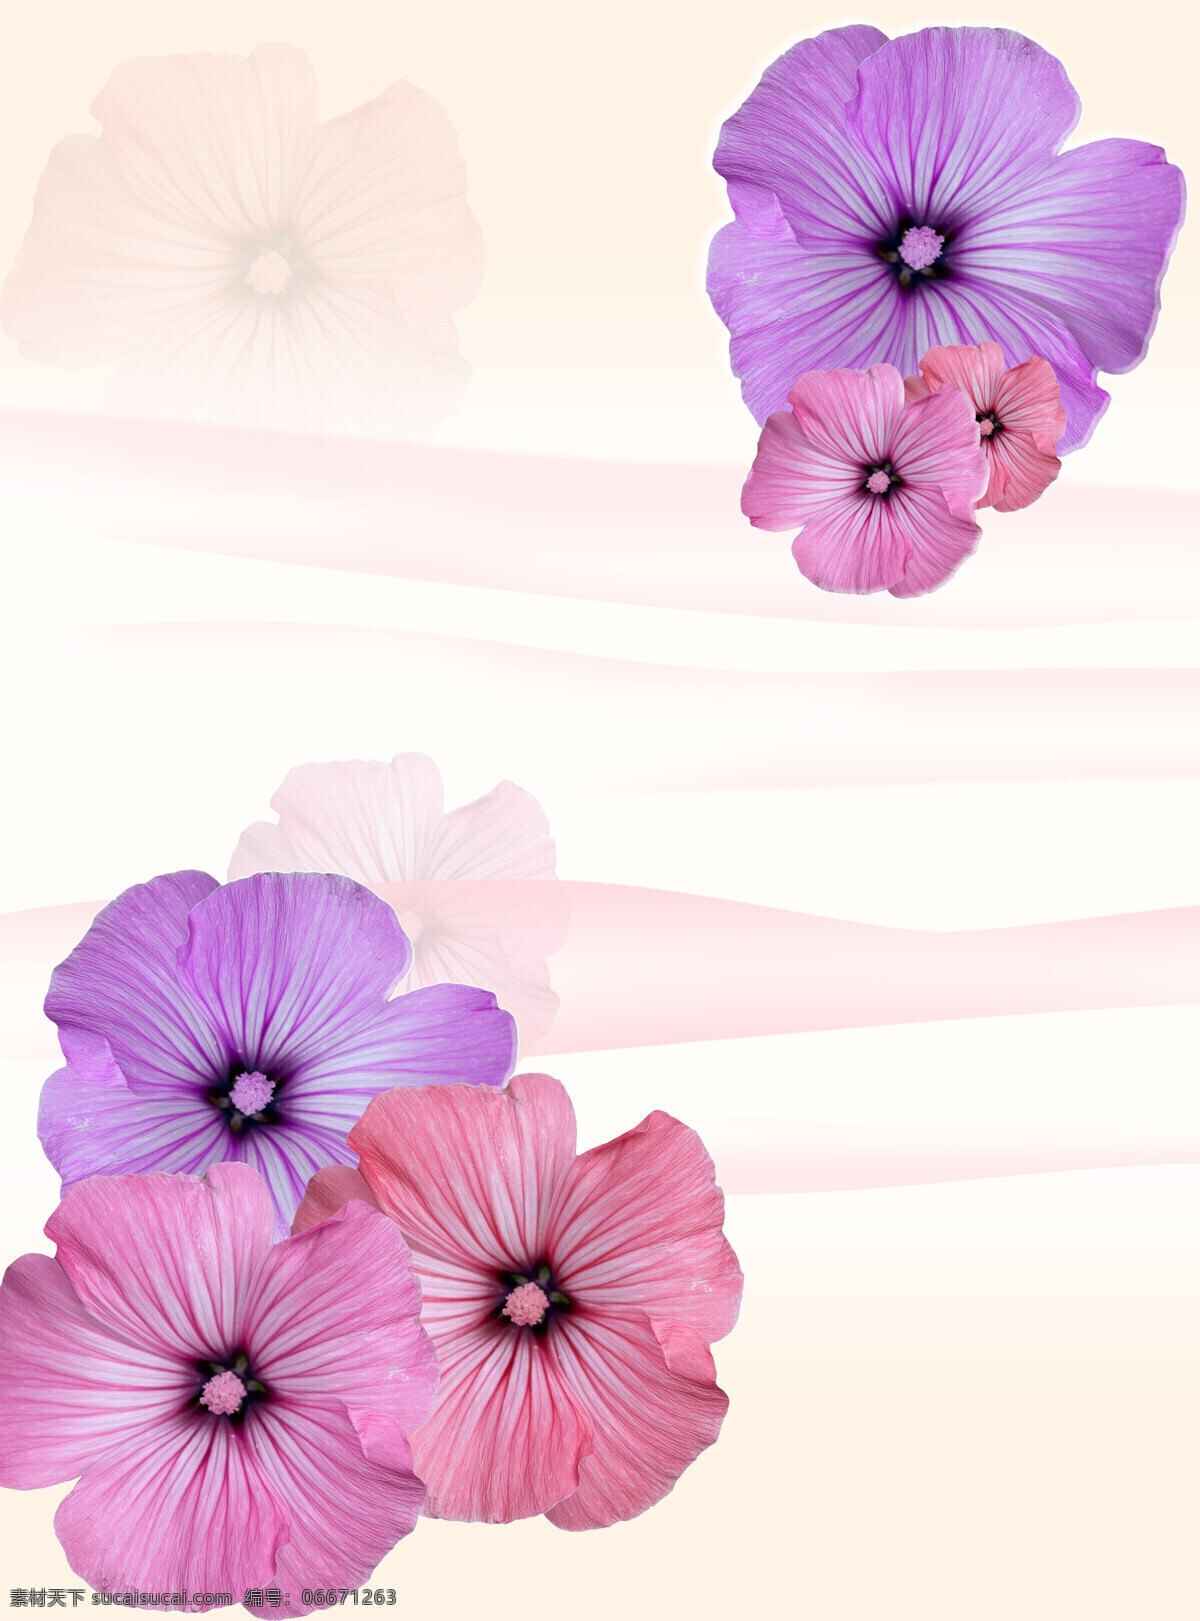 紫色 梦幻 花朵 漂亮 移门 图 移门图 淡雅